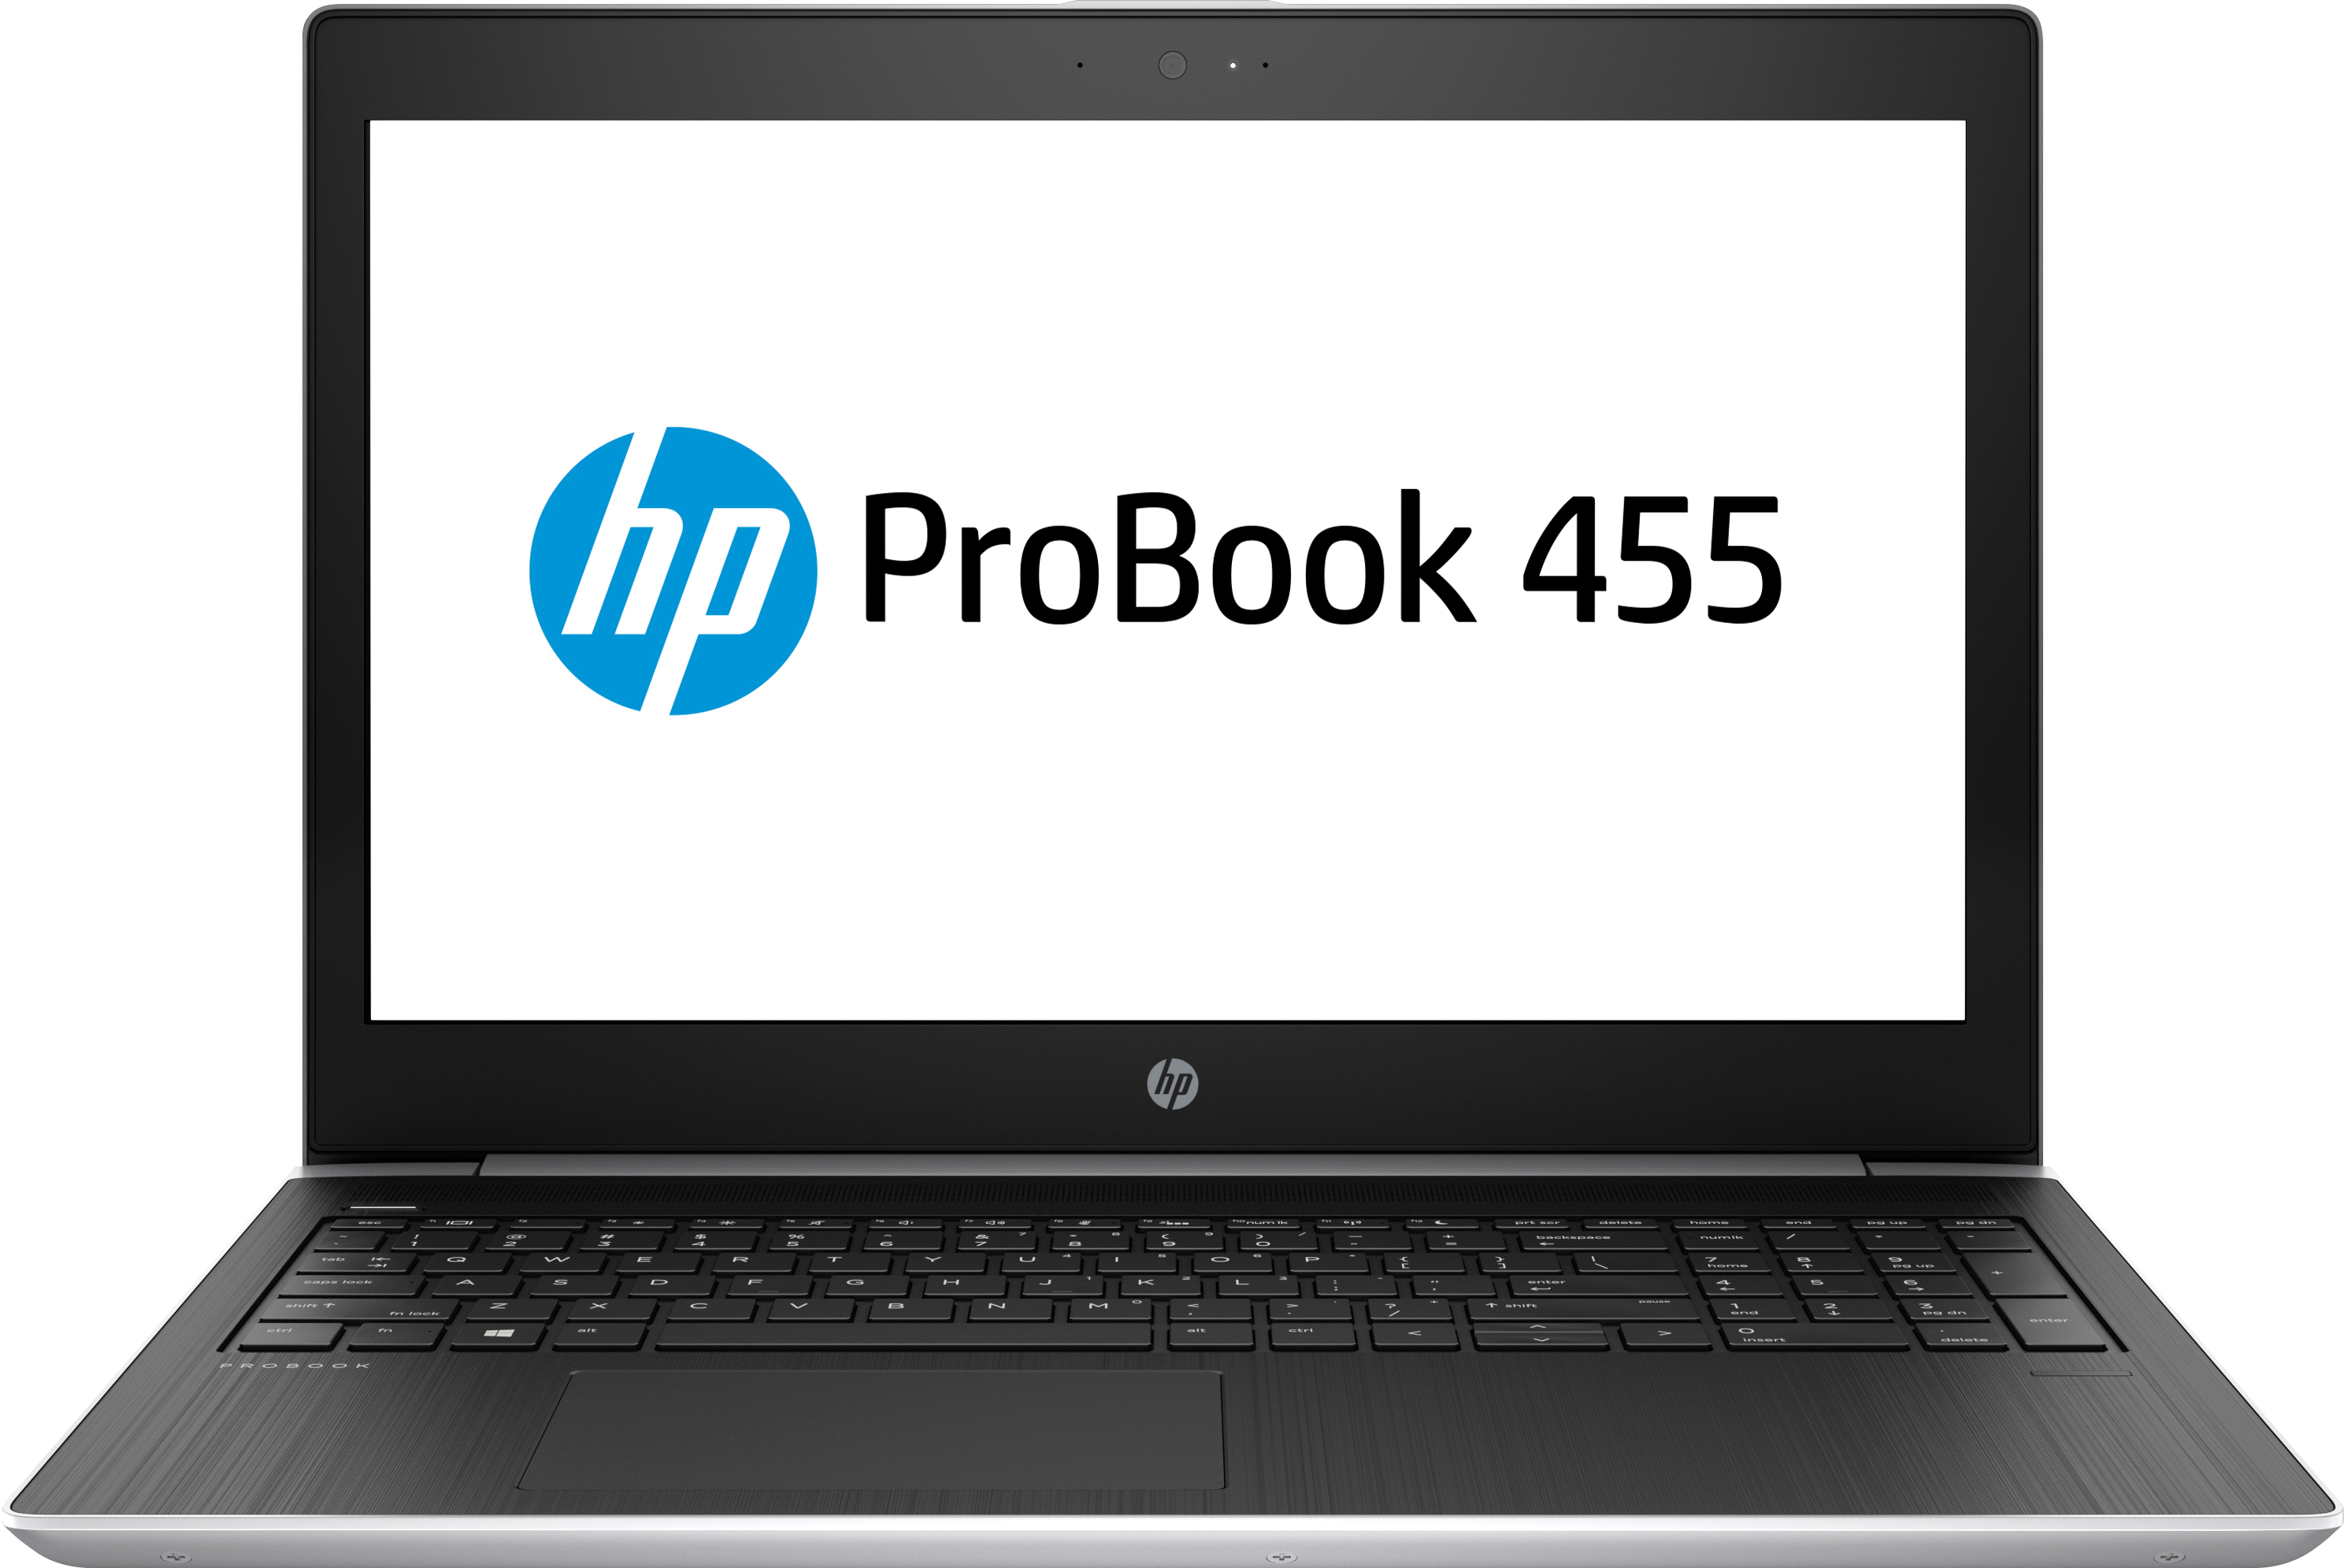 Laptop Hp Probook 455 G4 Amd A10 9620P 8Gb 1Tb 15.6" W10P 4Xn49Elife2T